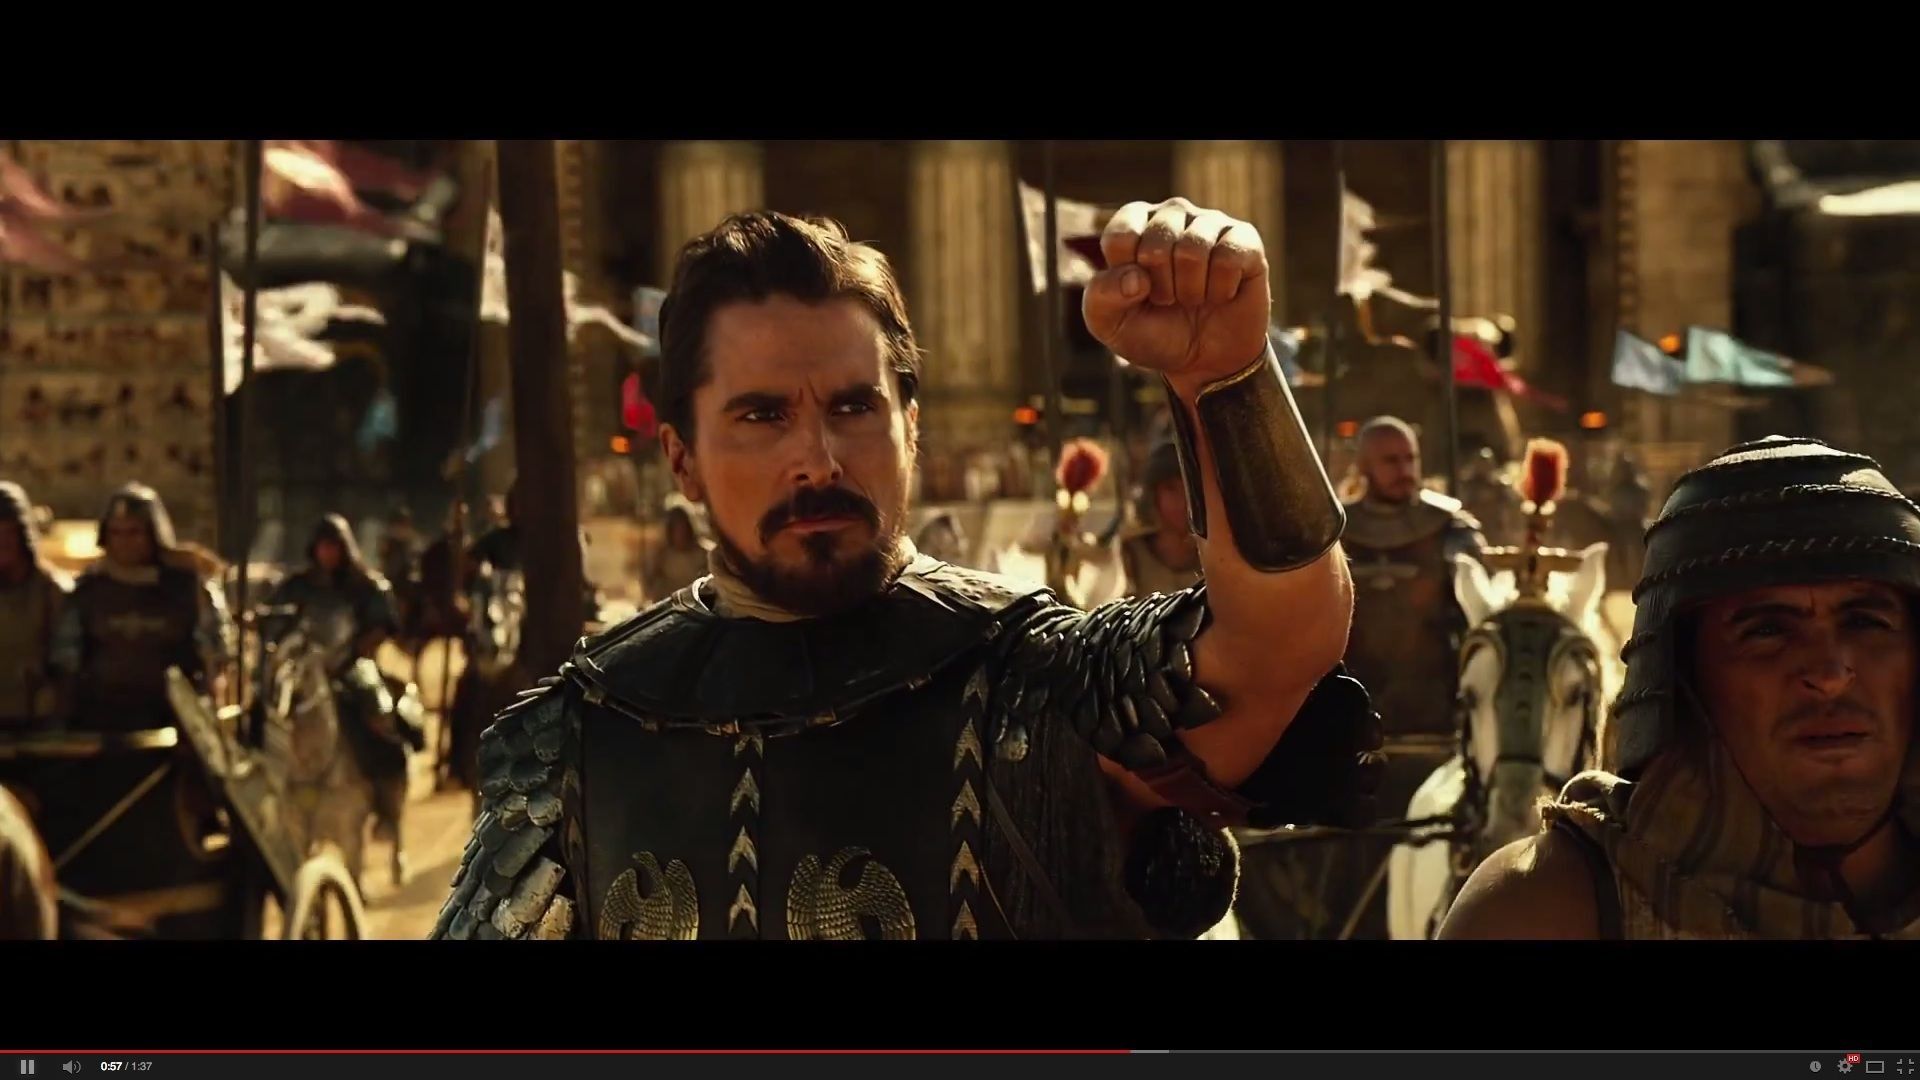 Christian Bale lâche les 10 plaies d'Égypte dans "Exodus"